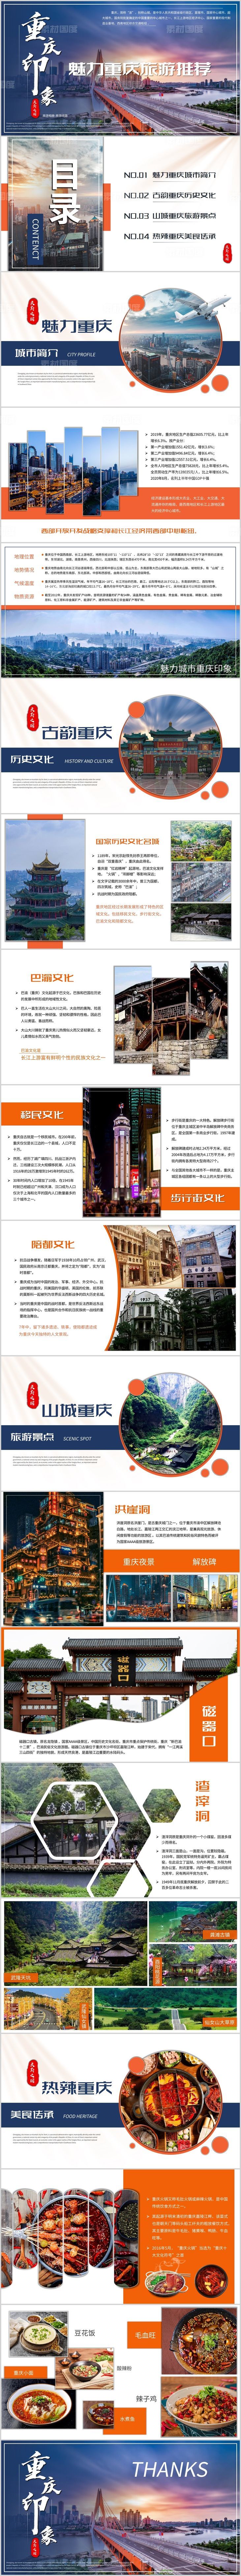 重庆城市印象旅游相册线路推荐PPT